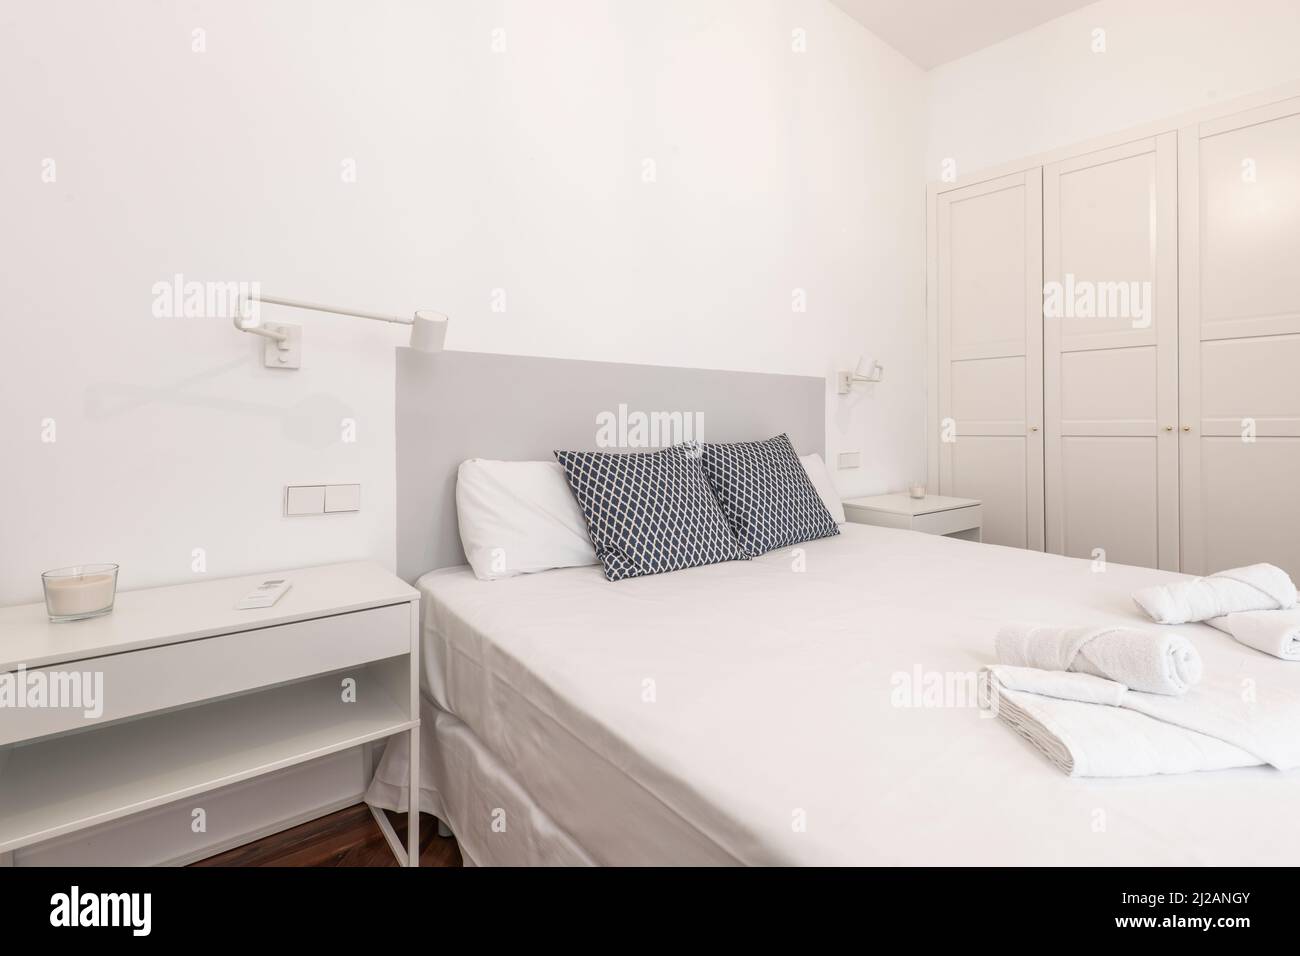 Chambre avec tête de lit en bois gris, armoire en bois blanc intégrée à quatre portes, deux tables de chevet blanches, lampes pliantes, literie et pin à chevrons f Banque D'Images